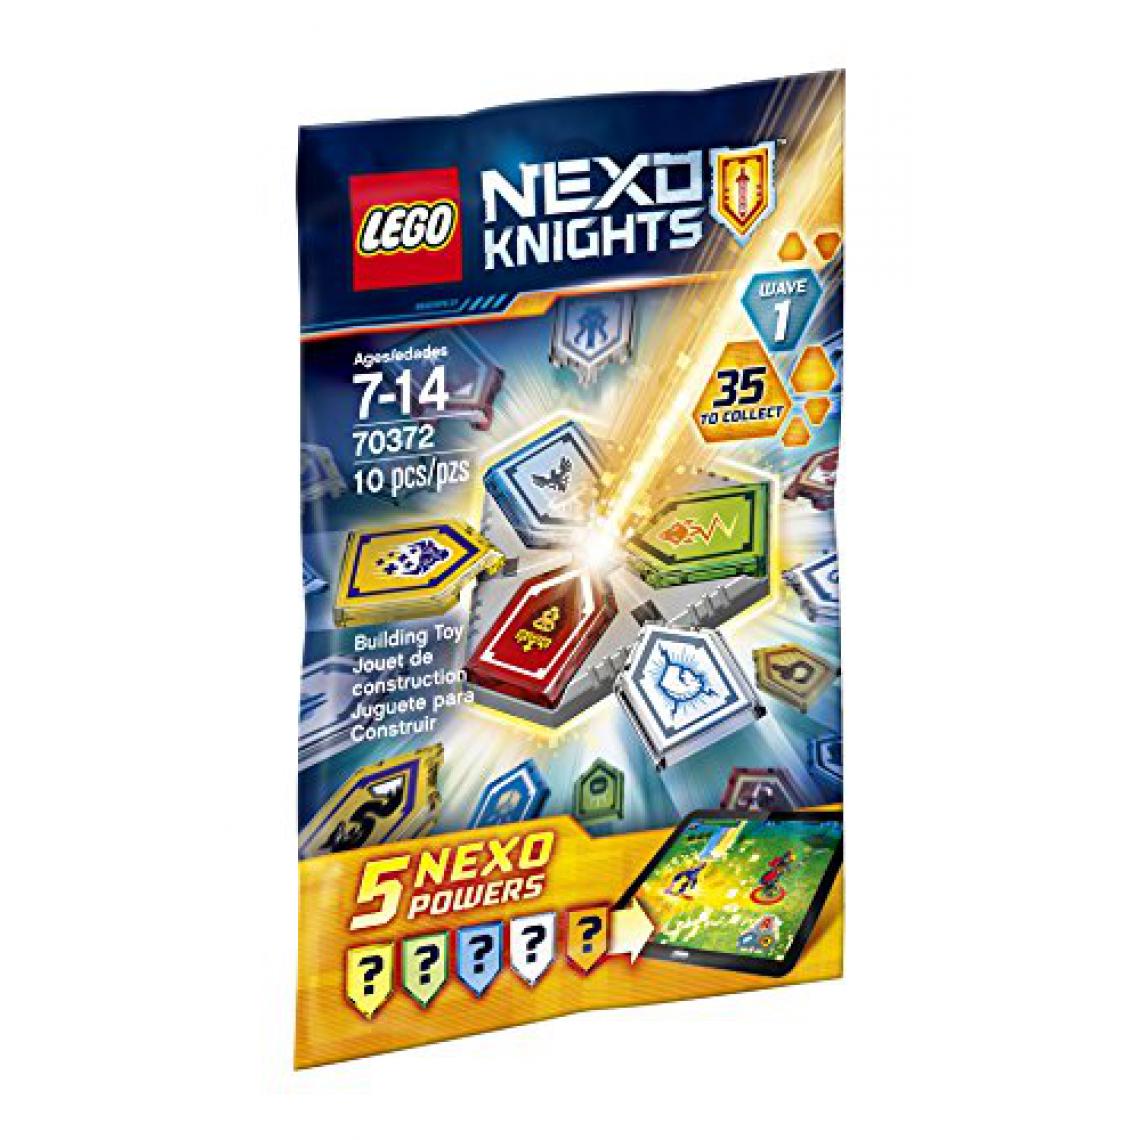 Lego - LEgO Nexo Knights combo NEXO Powers Wave 1 70372 Kit de construction (10 pièces) - Briques et blocs